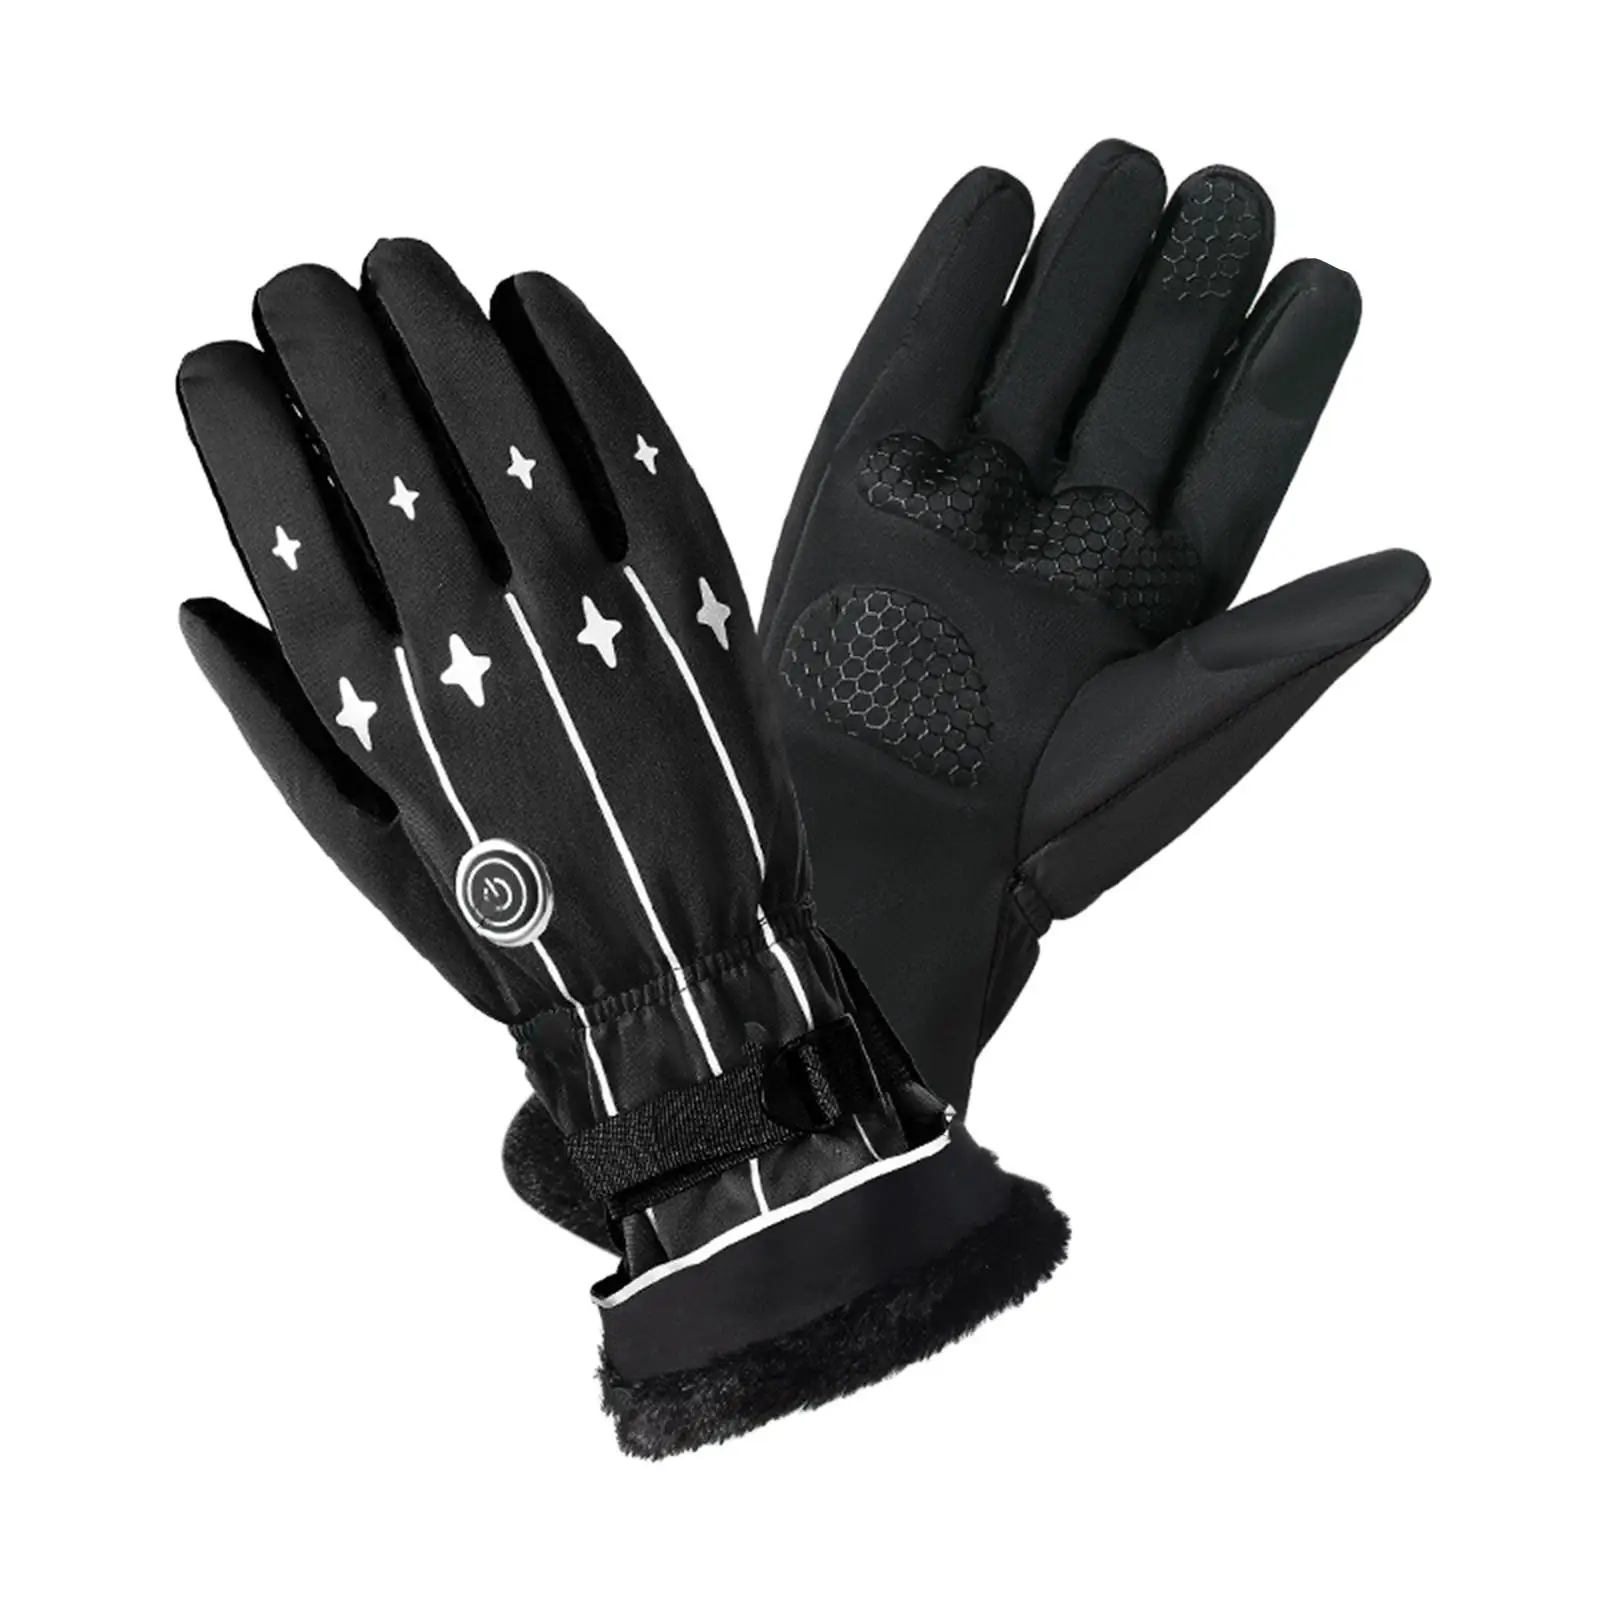 Electric Battery Heated Gloves Touch Screen Warm Adjustable Men Women Waterproof